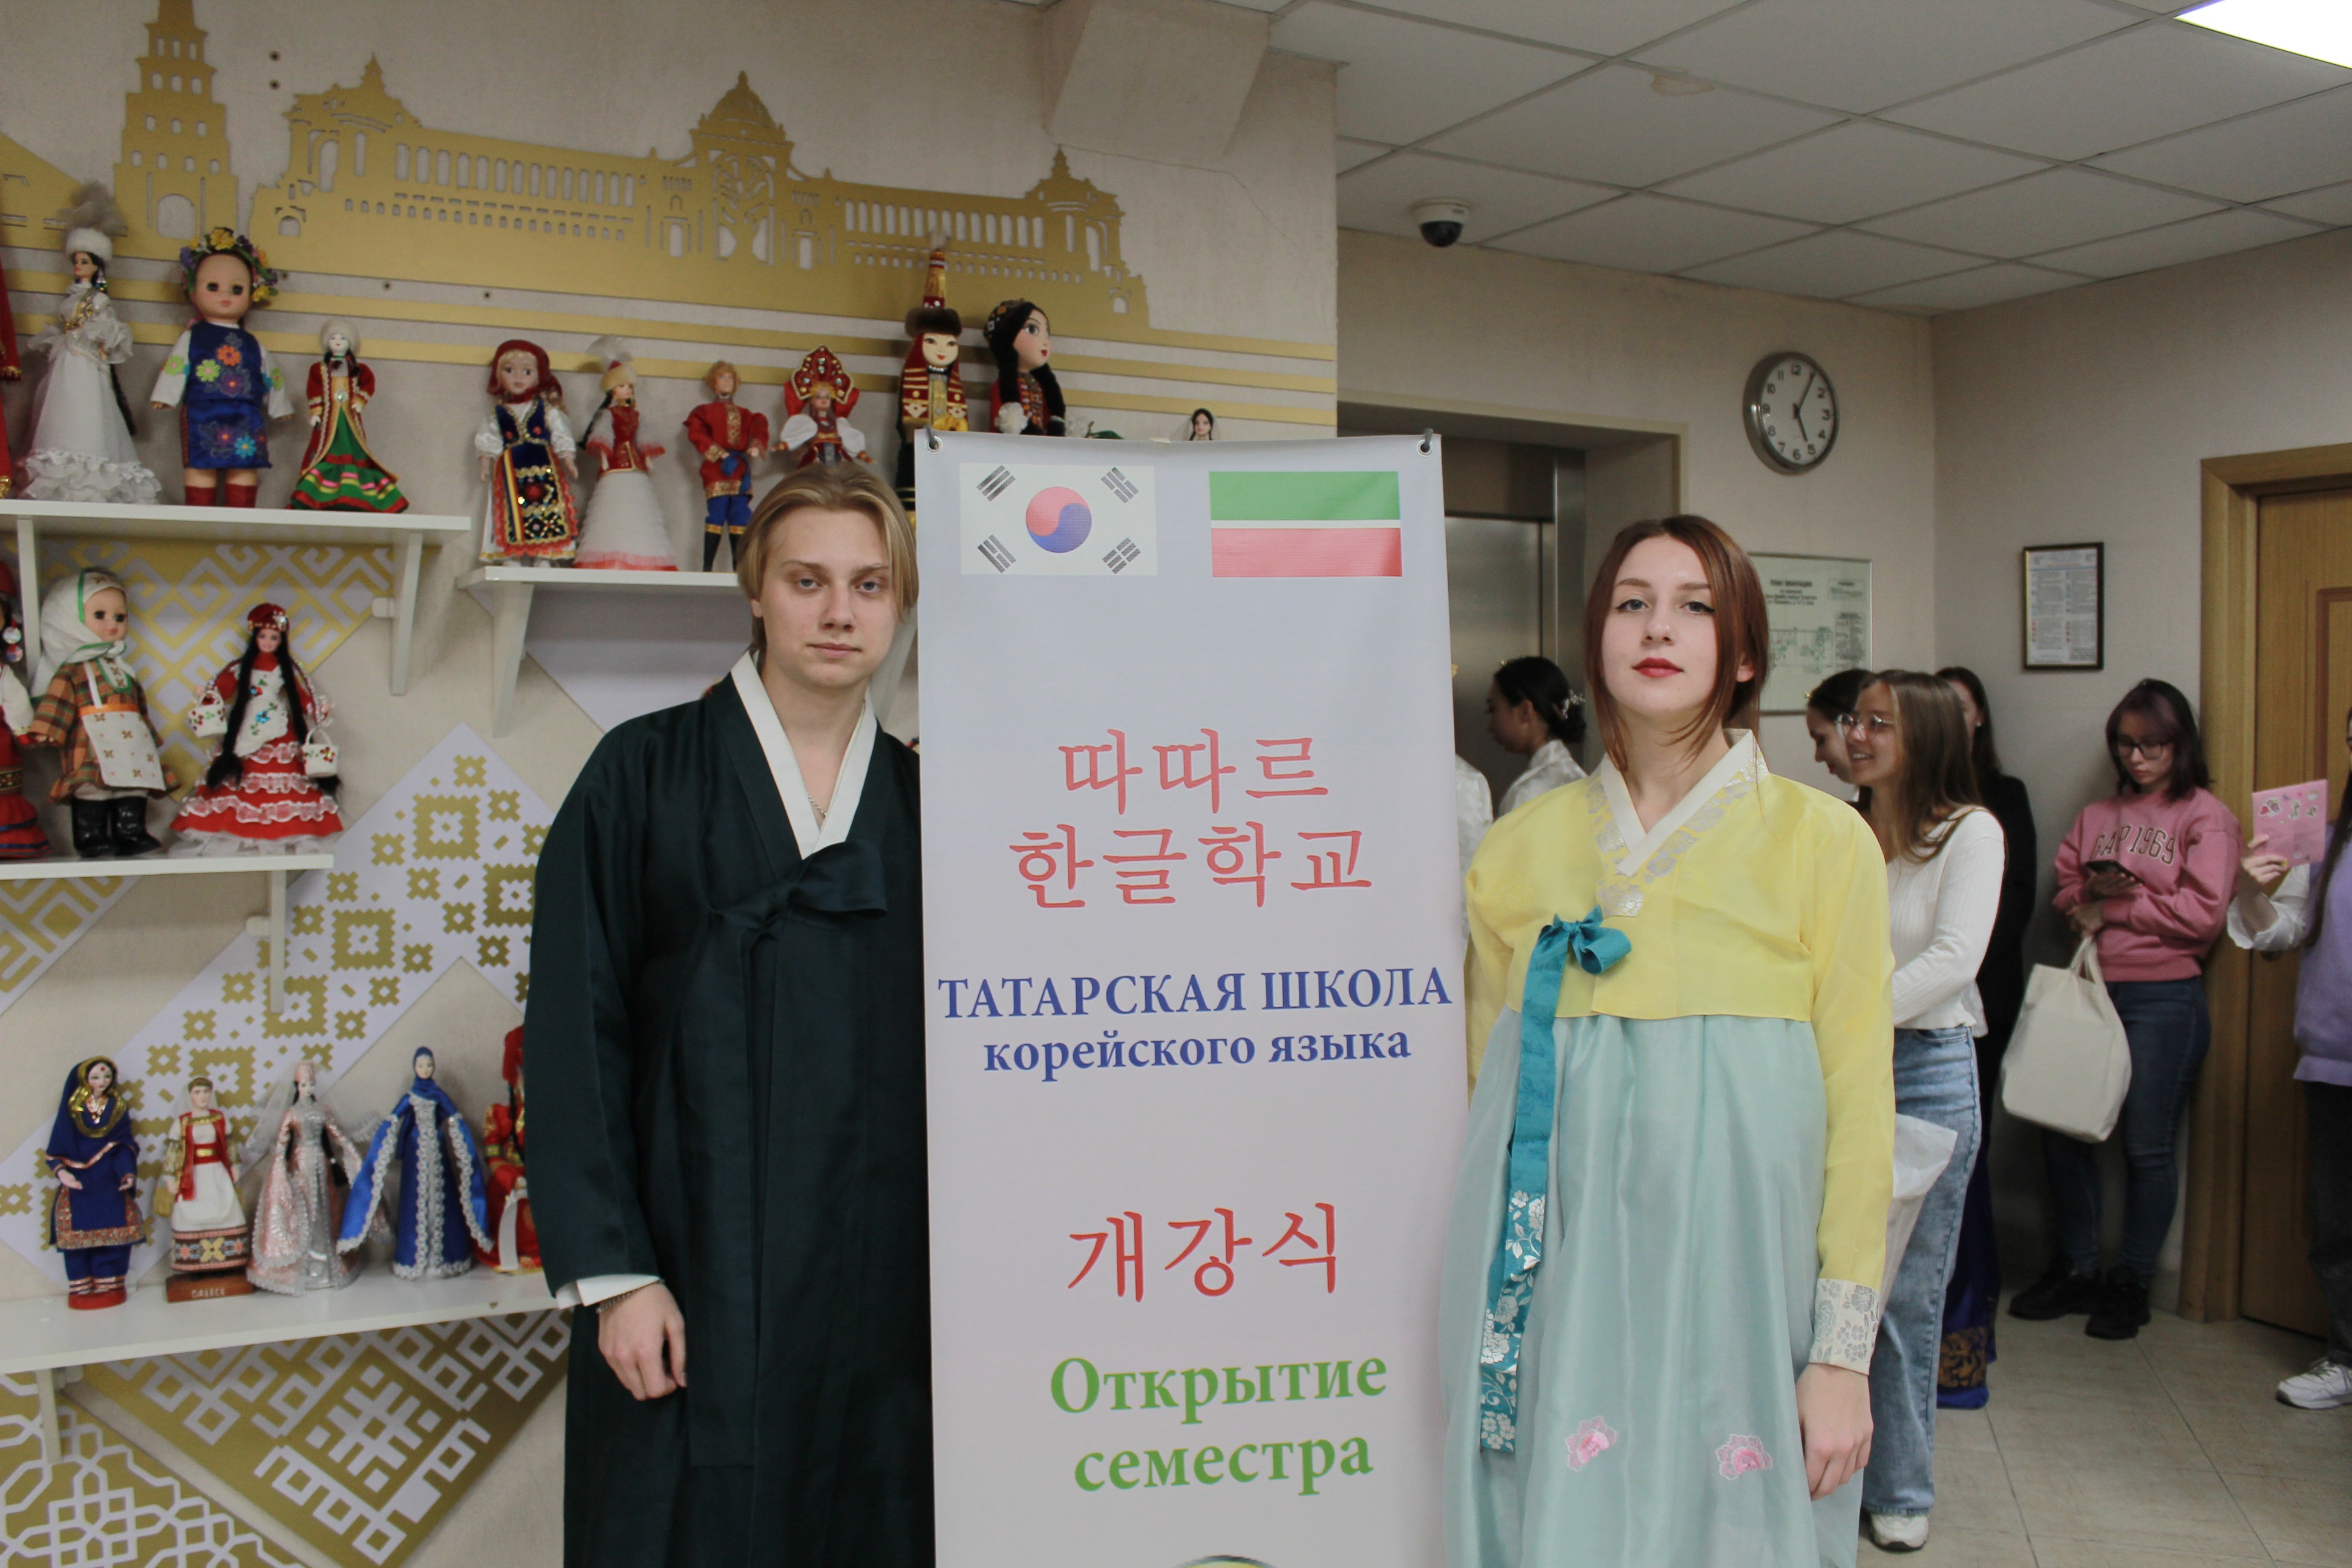 Состоялась церемония открытия осеннего семестра кружка корейского языка